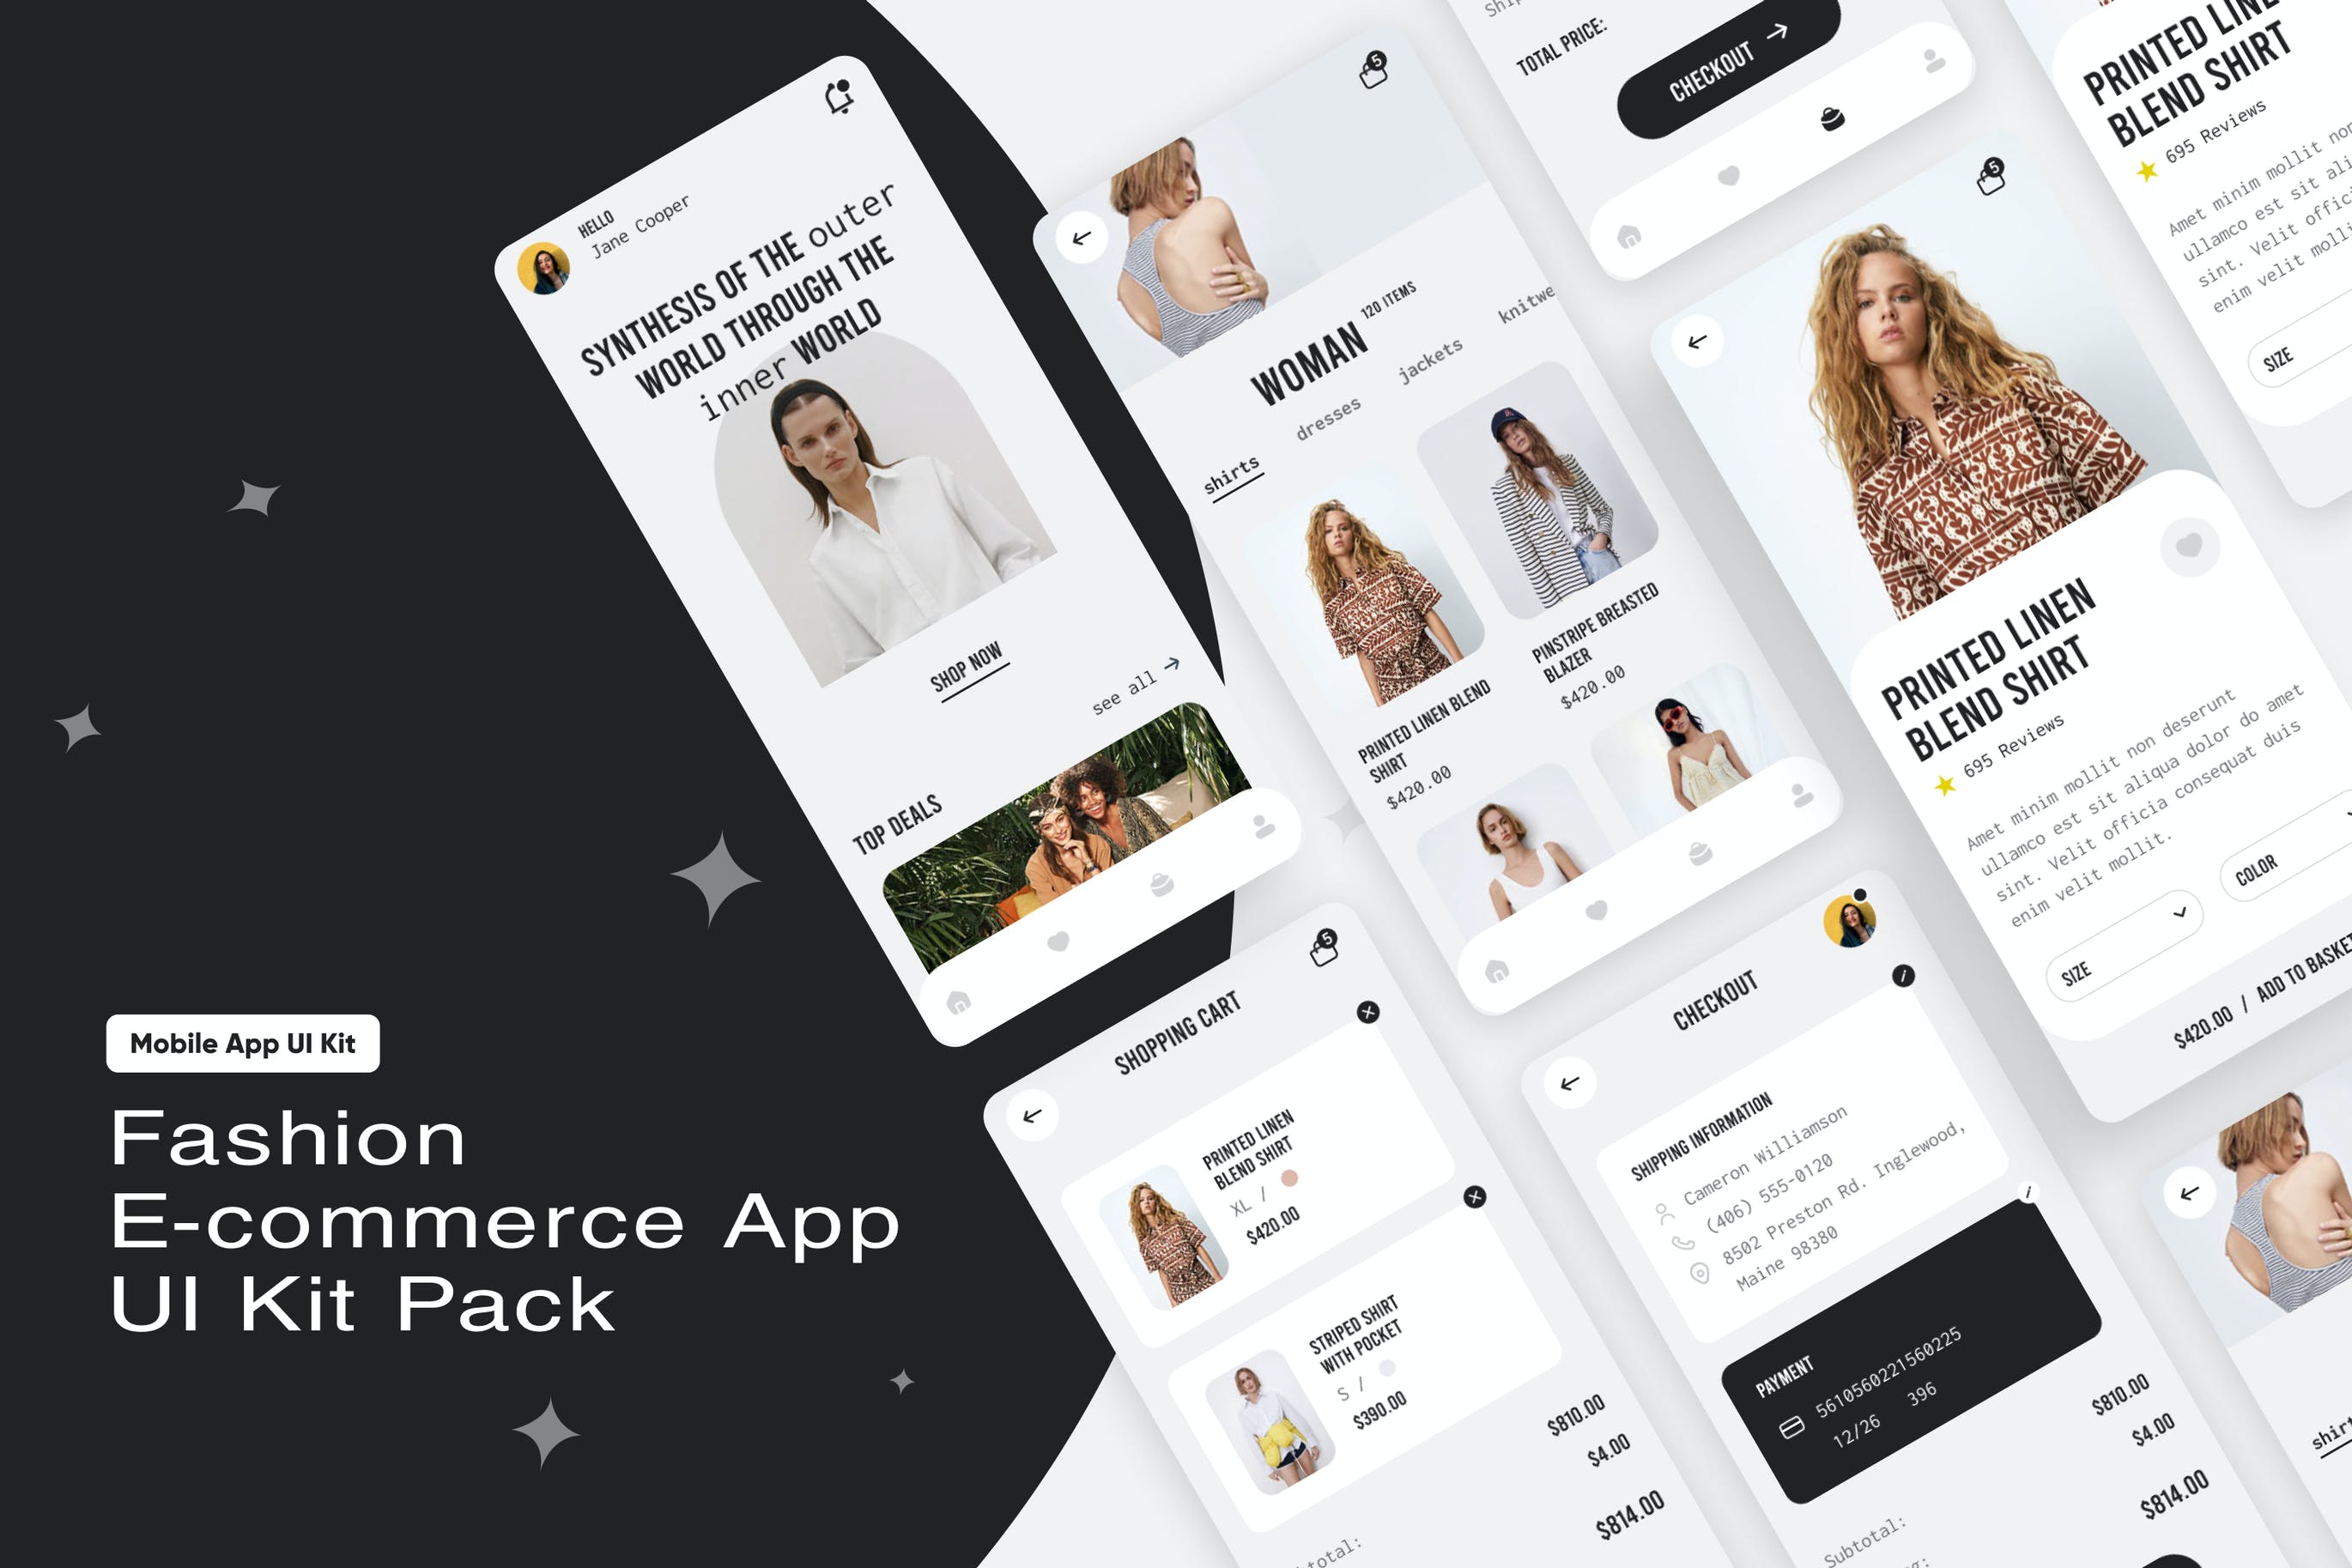 时尚电子商务App设计UI套件 Fashion E-commerce App UI Kit